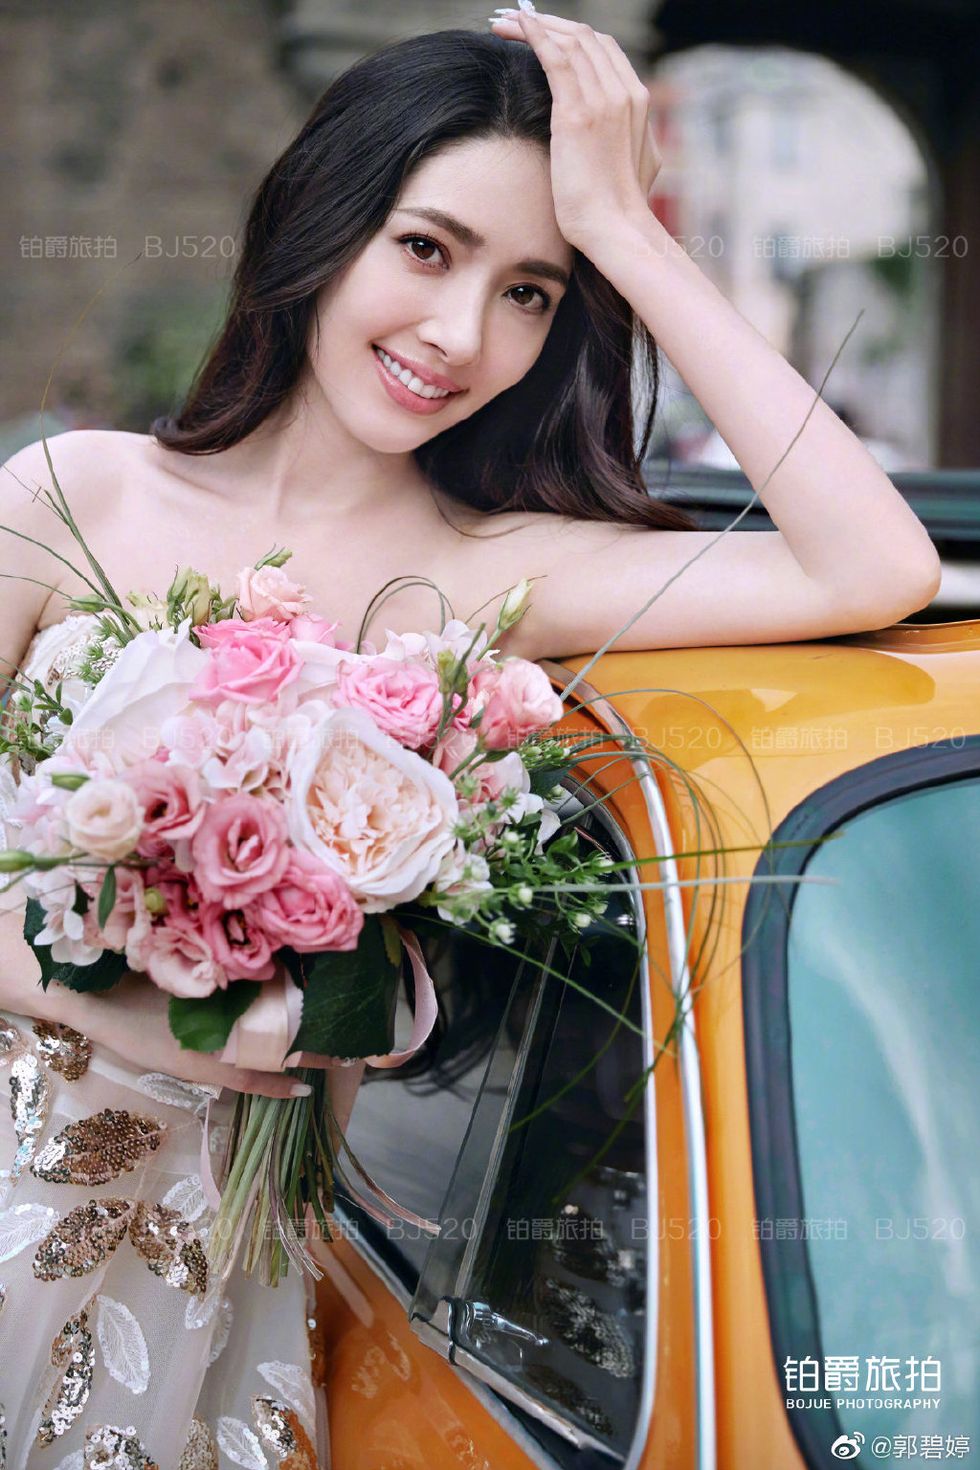 Bouquet, Photograph, Bride, Flower, Beauty, Dress, Plant, Gown, Photography, Flower Arranging, 